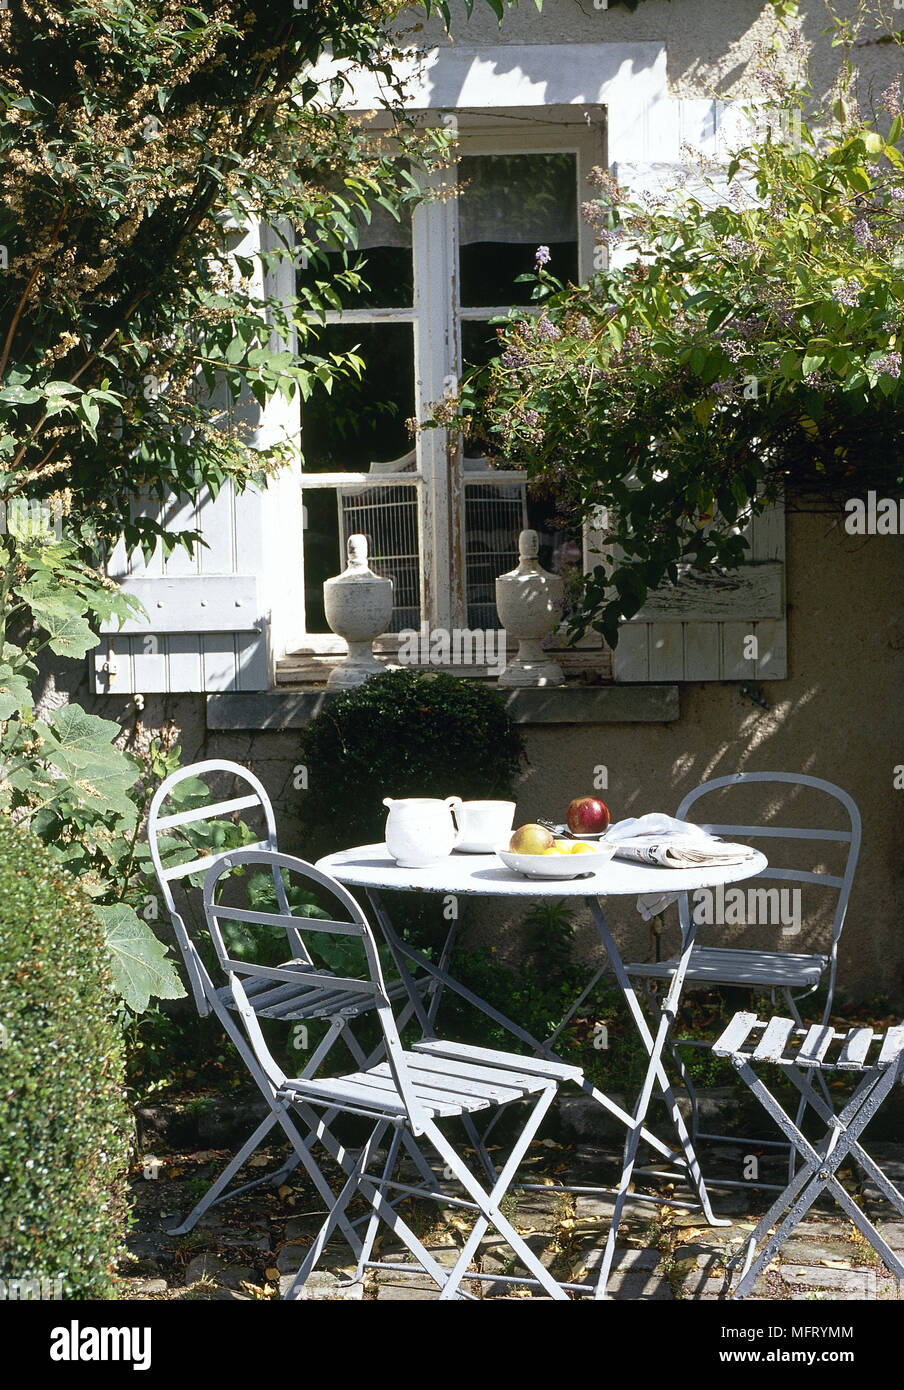 Terrasse Tisch Stühle im Freien außerhalb Terrassen Möbel Stockfotografie -  Alamy